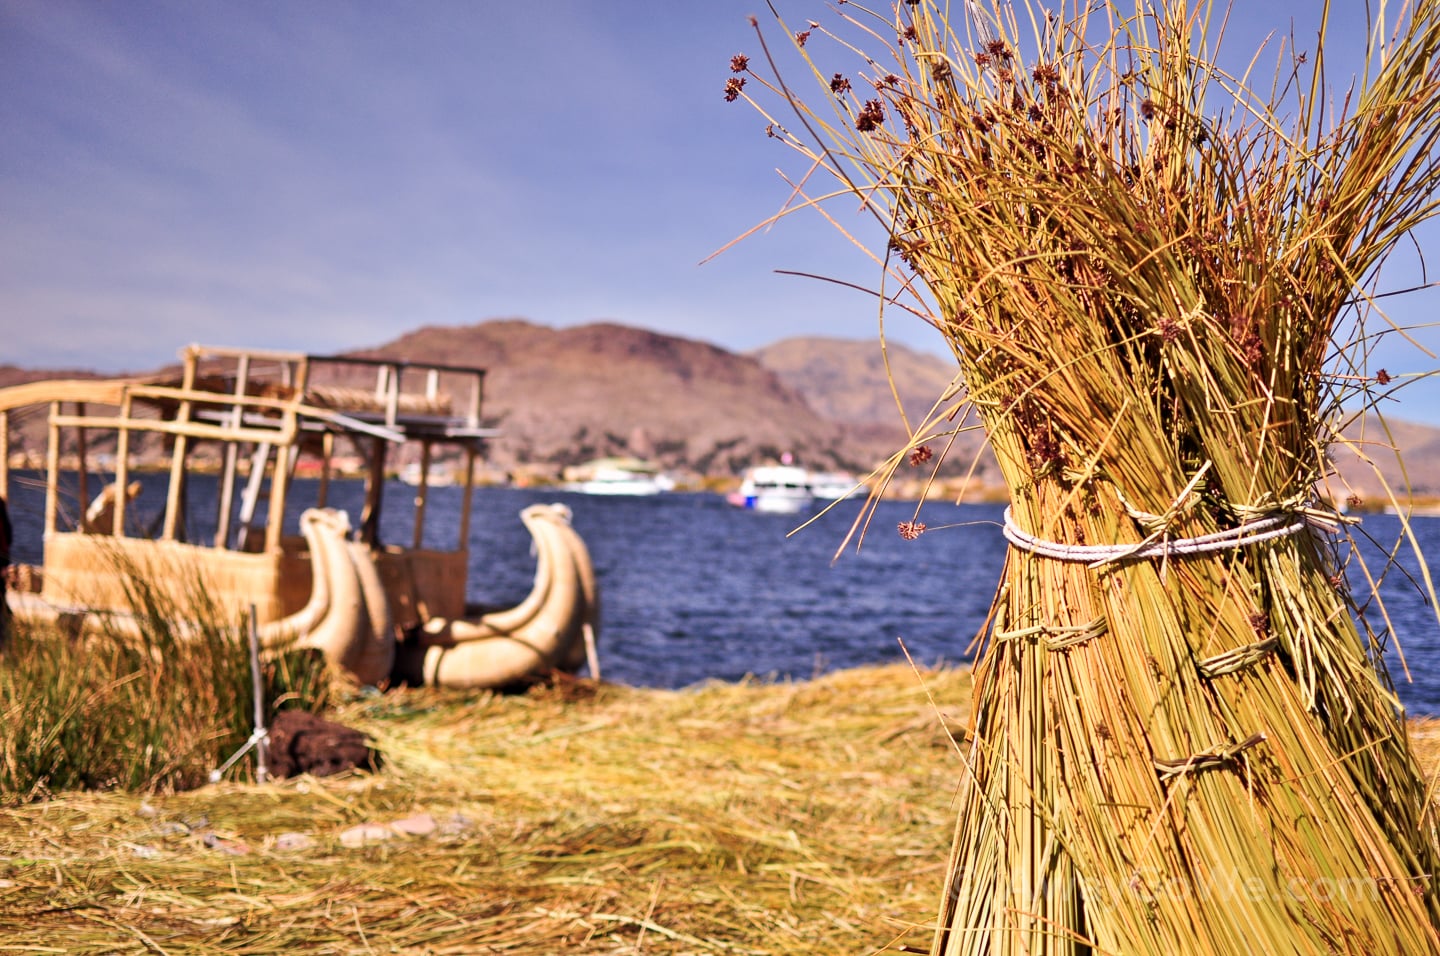 Uros Floating Islands Lake Titicaca Peru